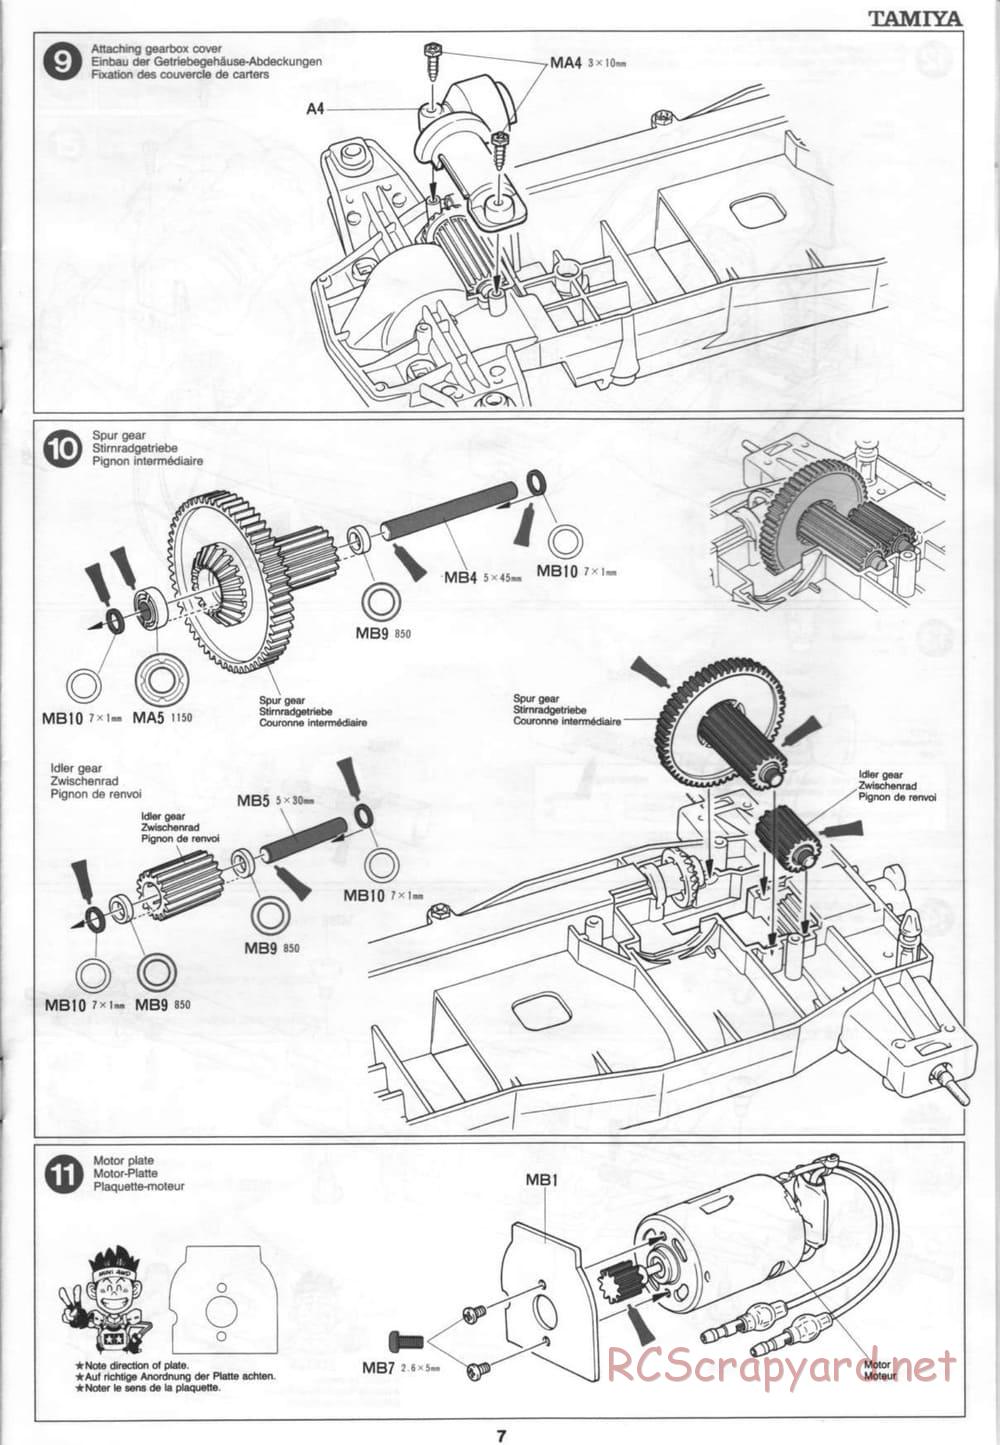 Tamiya - Thunder Blitz - Boy's 4WD Chassis - Manual - Page 7